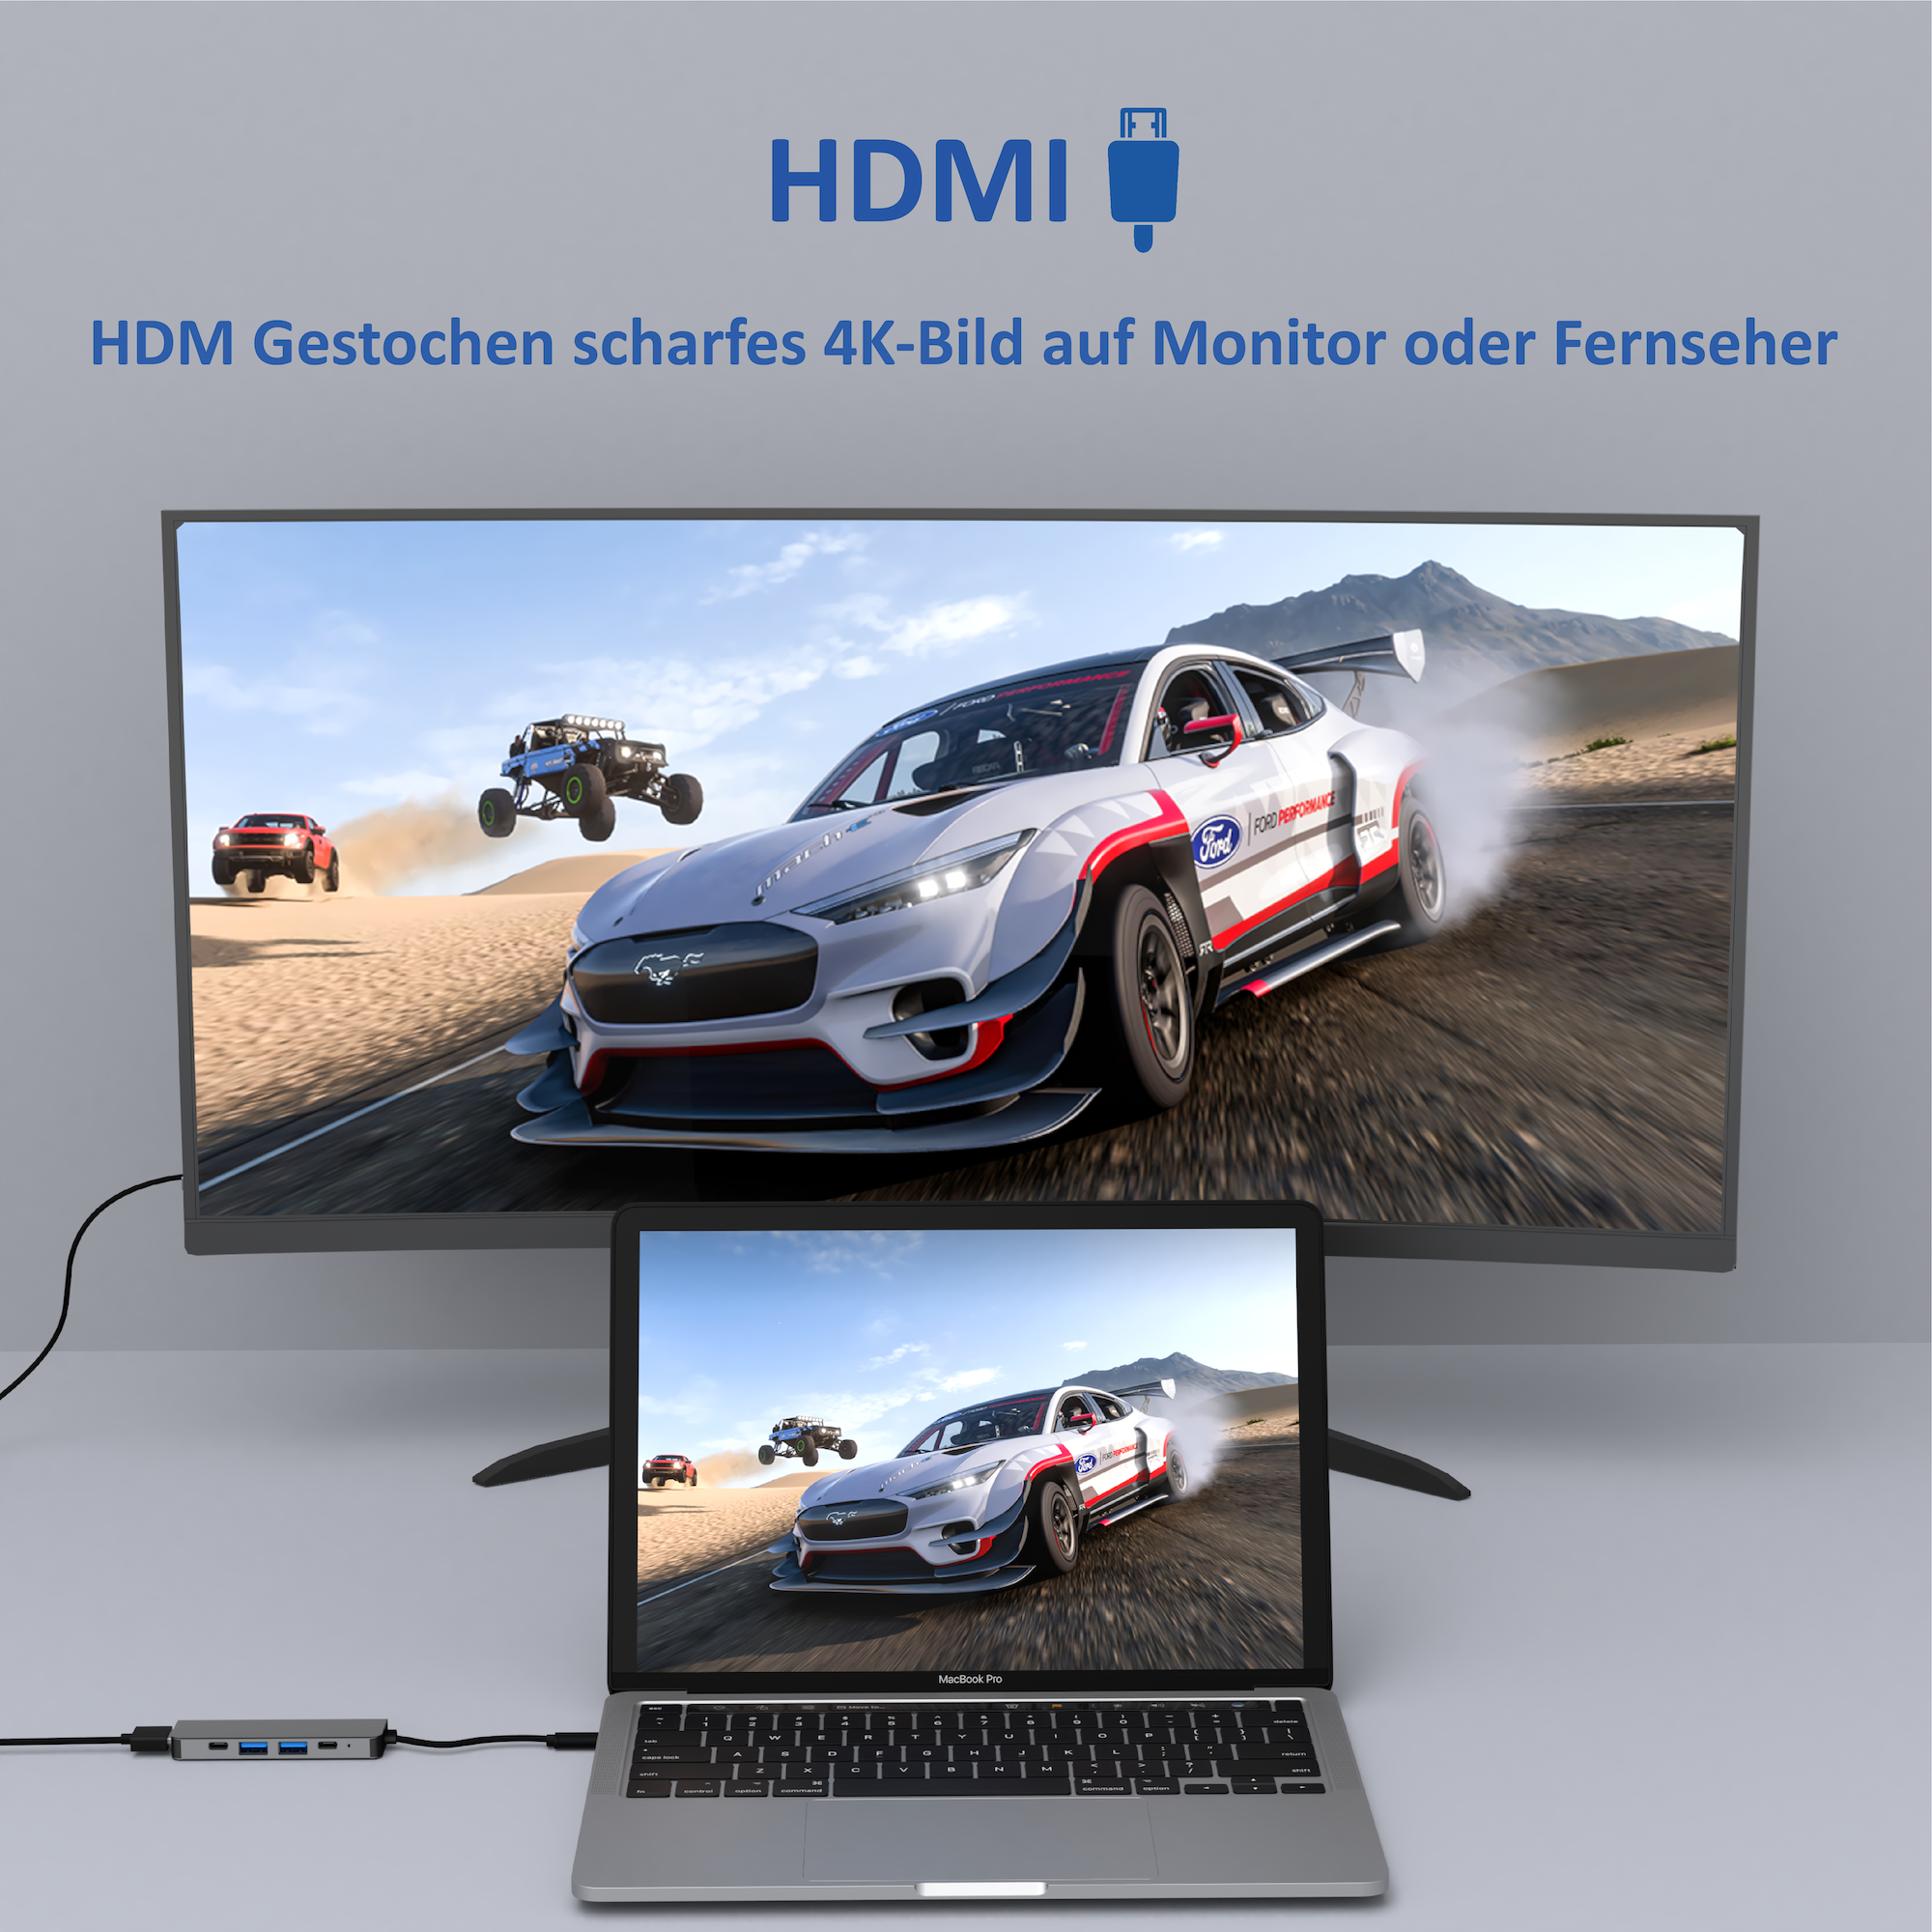 HDMI Grau Universal, ROLIO Space 4K Hub, USB-C